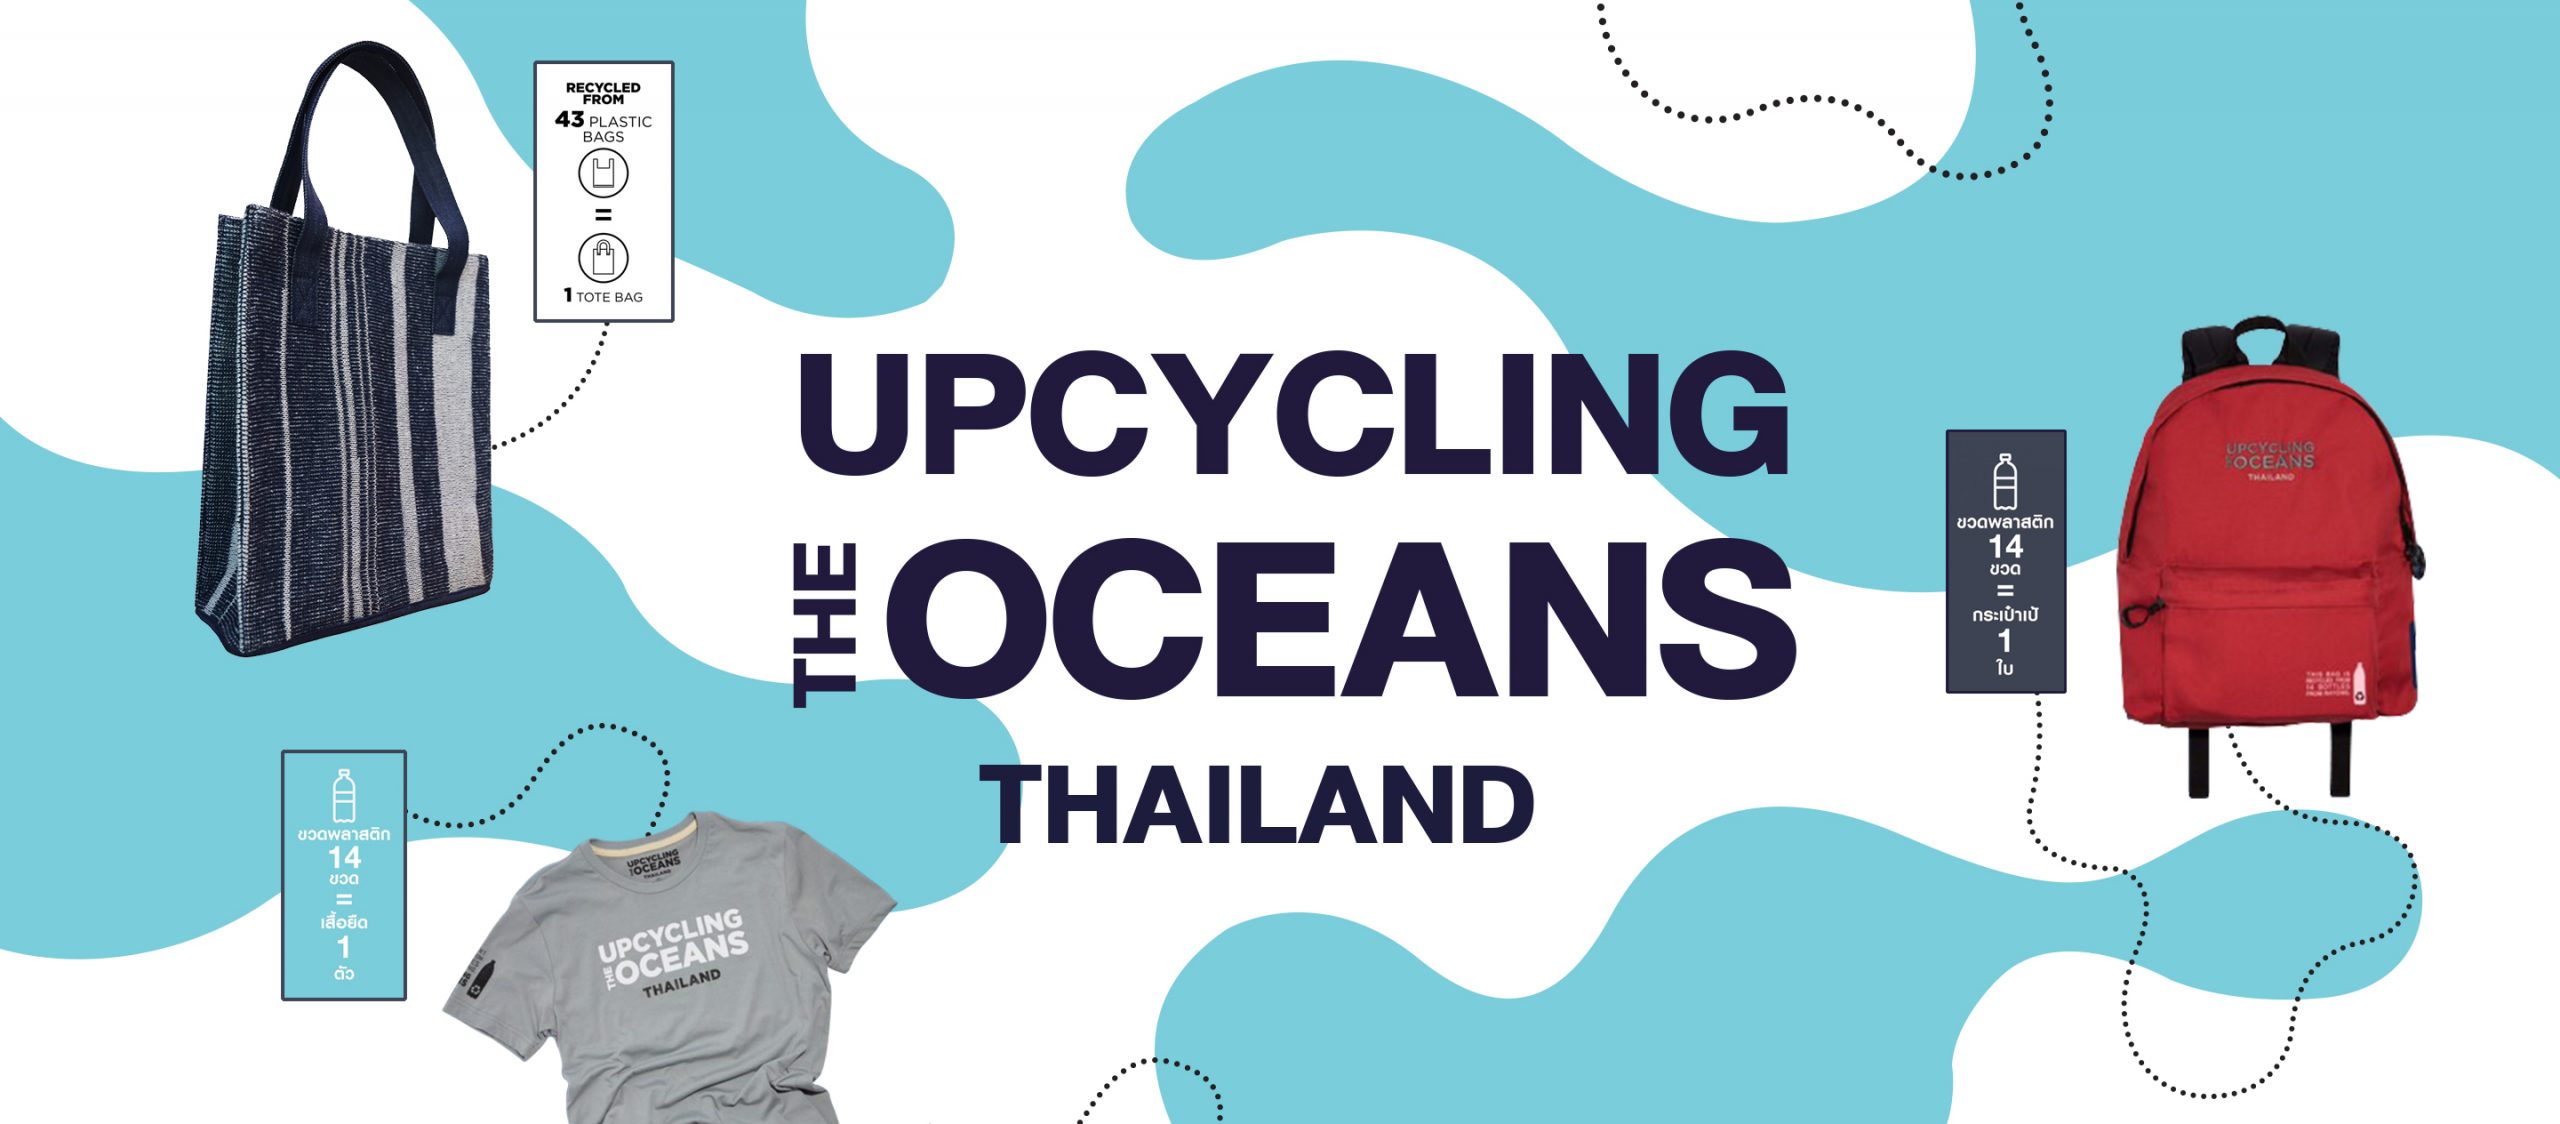 Upcycling the Oceans, Thailand โครงการที่เนรมิตขยะพลาสติกในท้องทะเลให้กลายเป็นสินค้าแฟชั่น